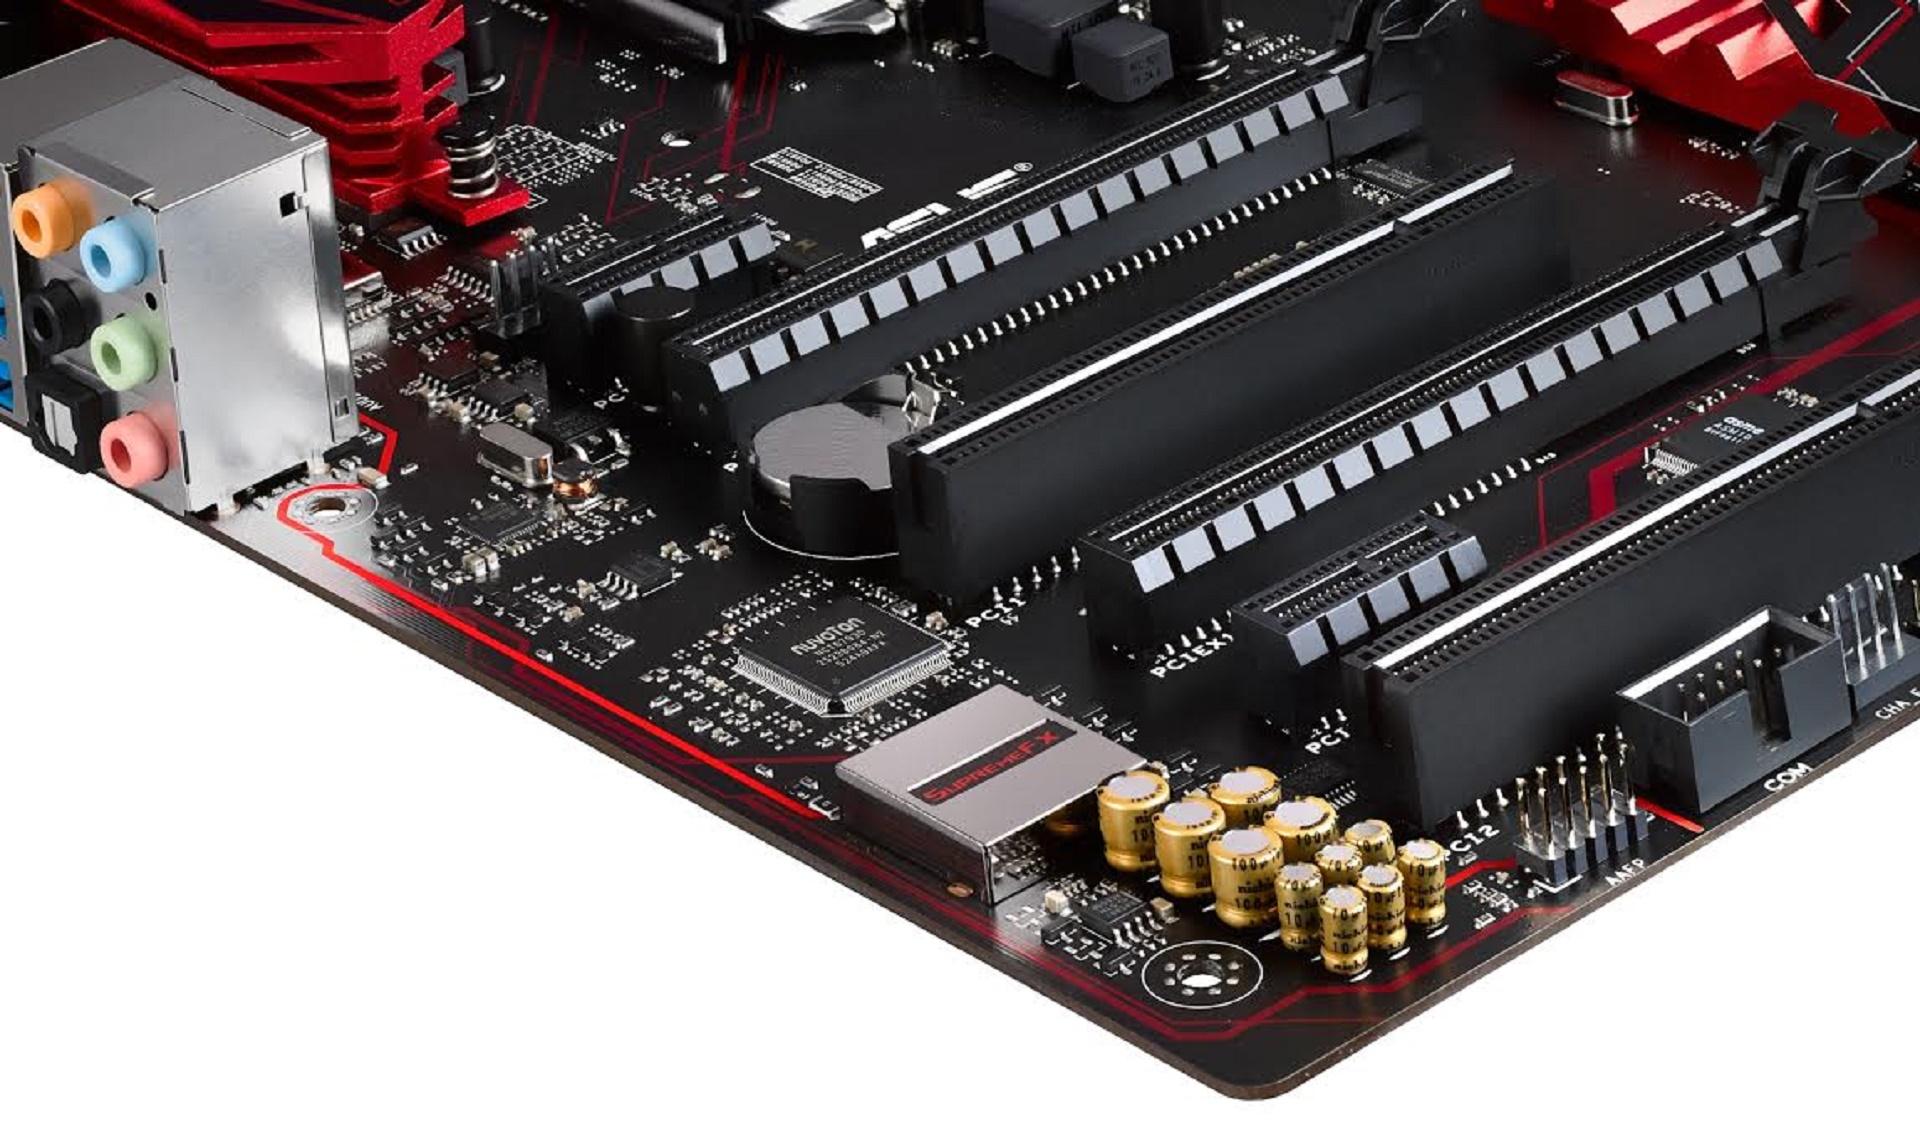 Asus công bố hai bo mạch chủ nền chipset B150 mới